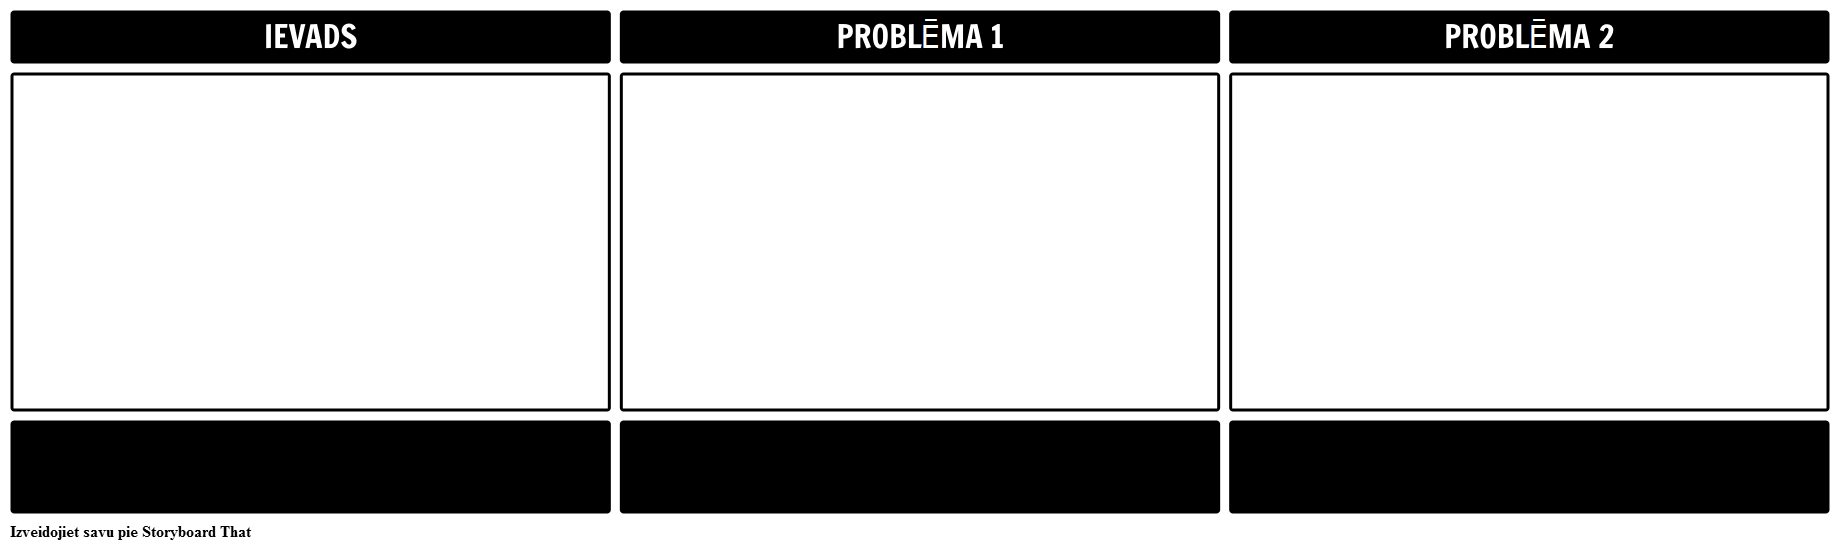 Dilemma Template 16x9